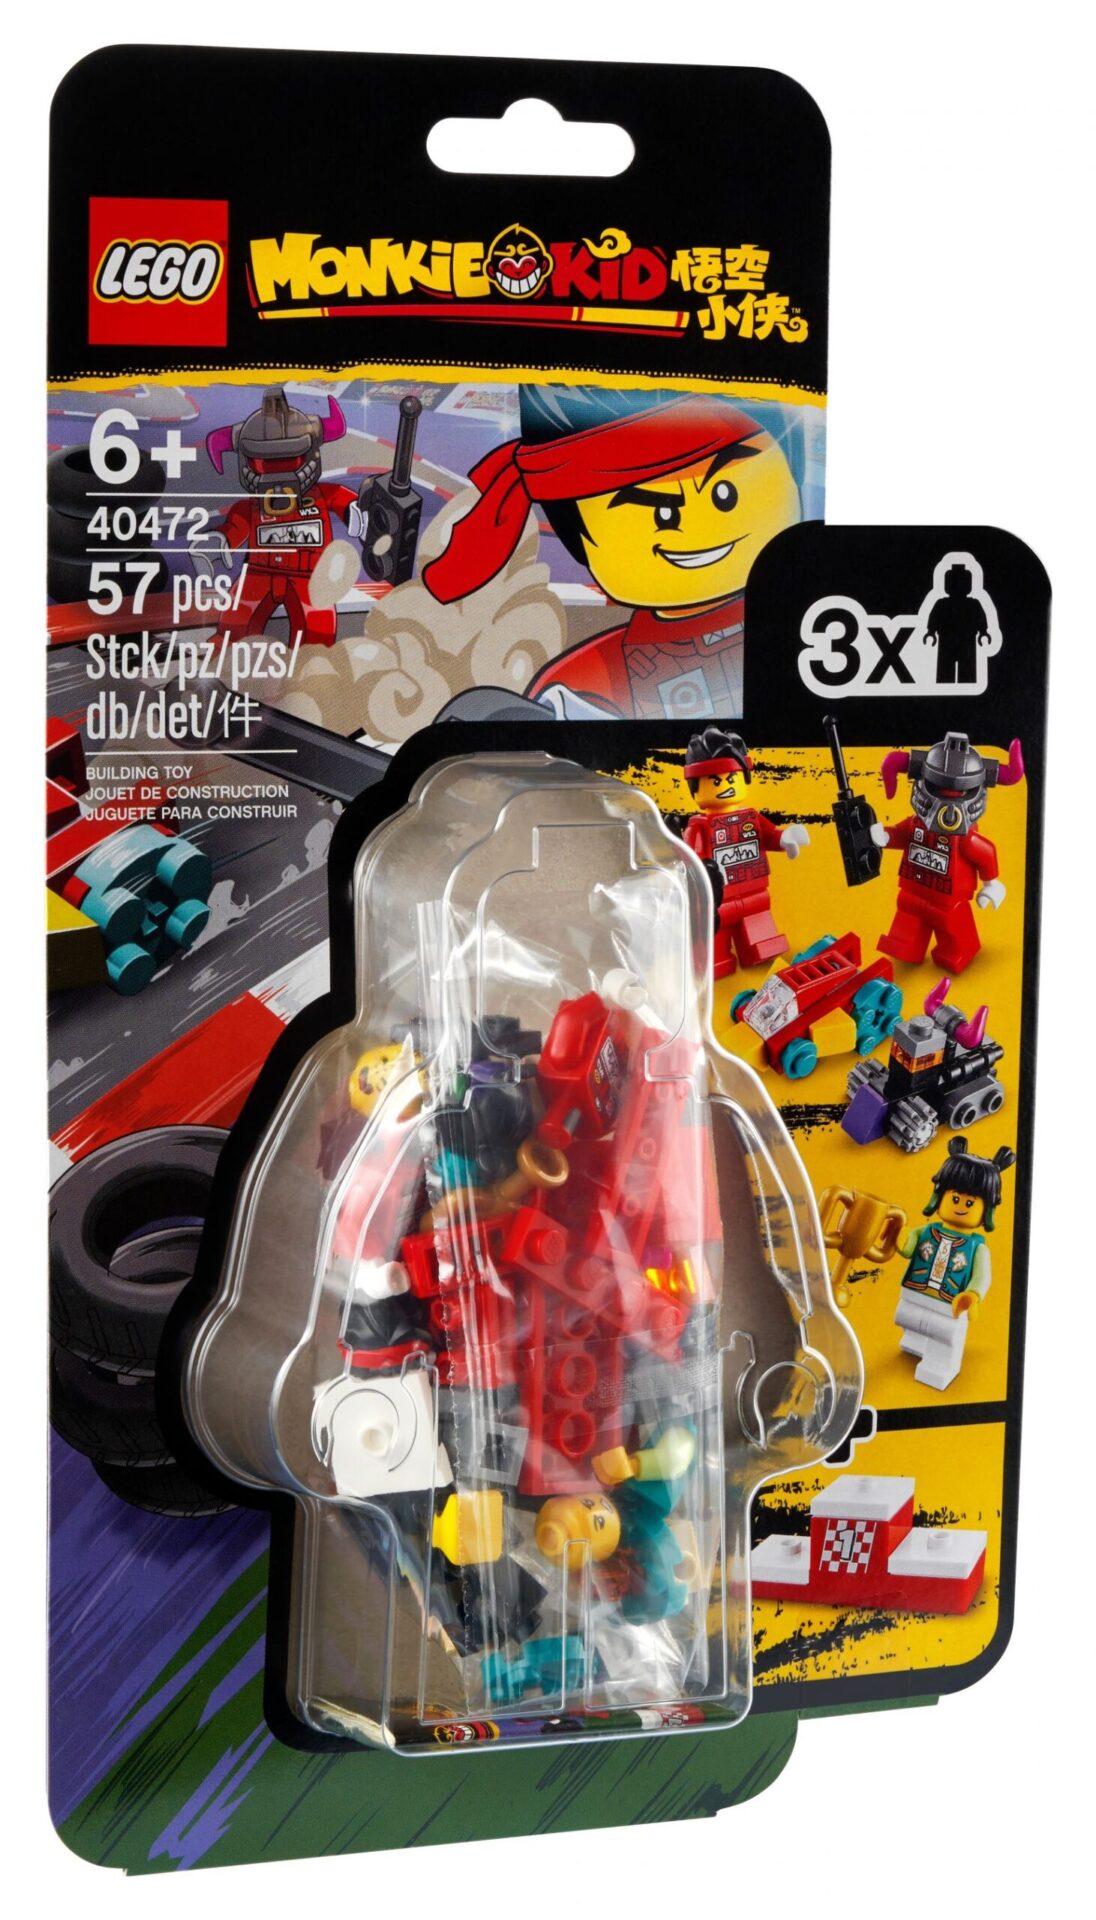 LEGO_40472_box1.jpg